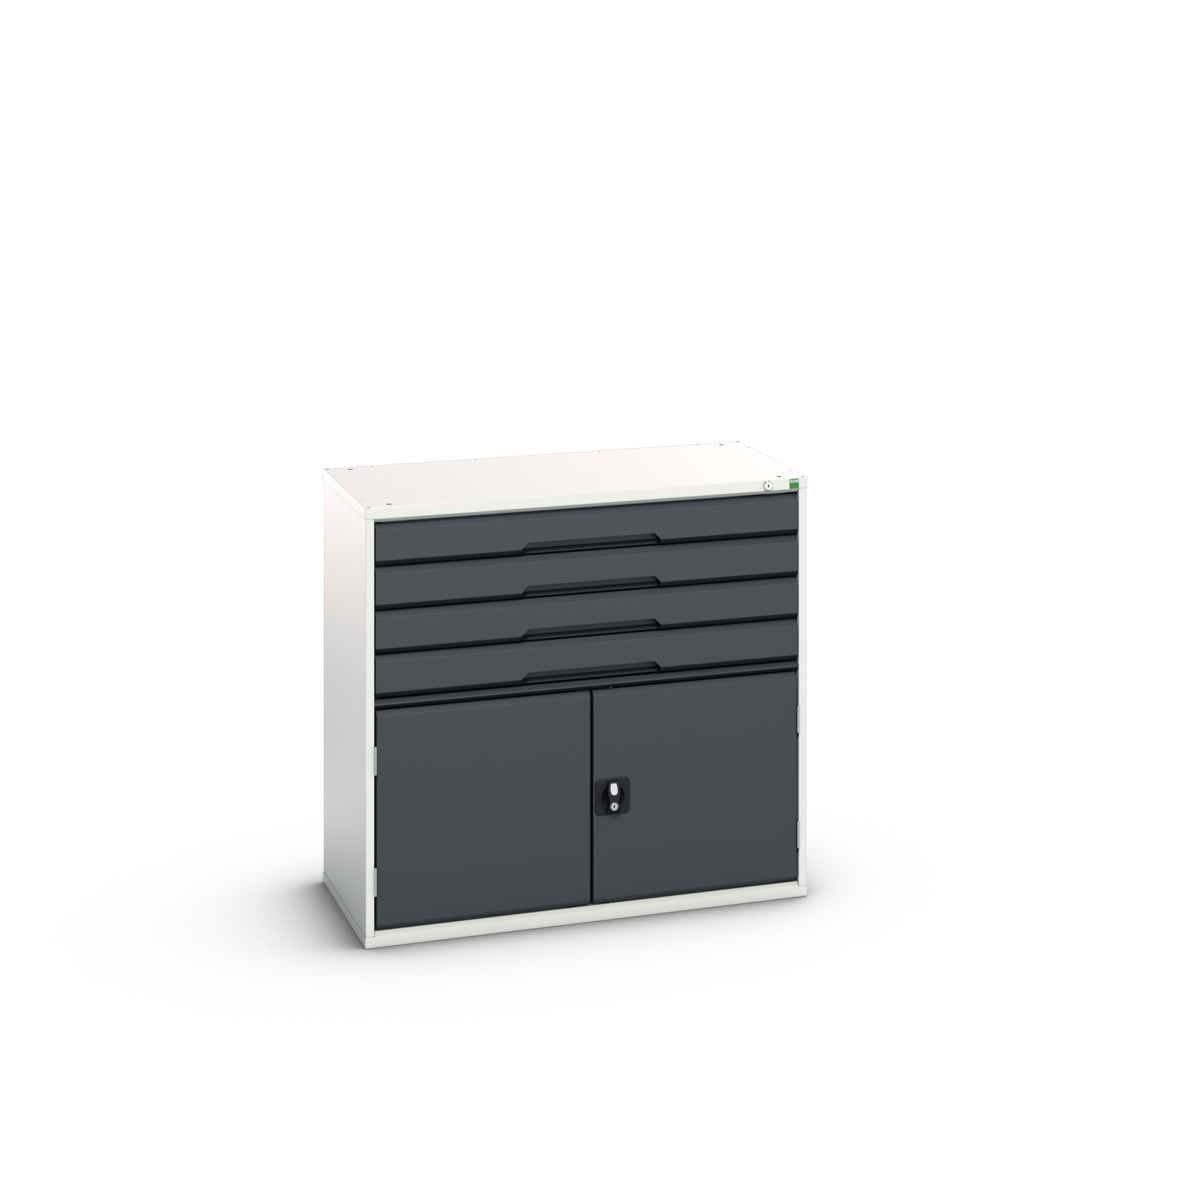 16925265. - verso drawer-door cabinet